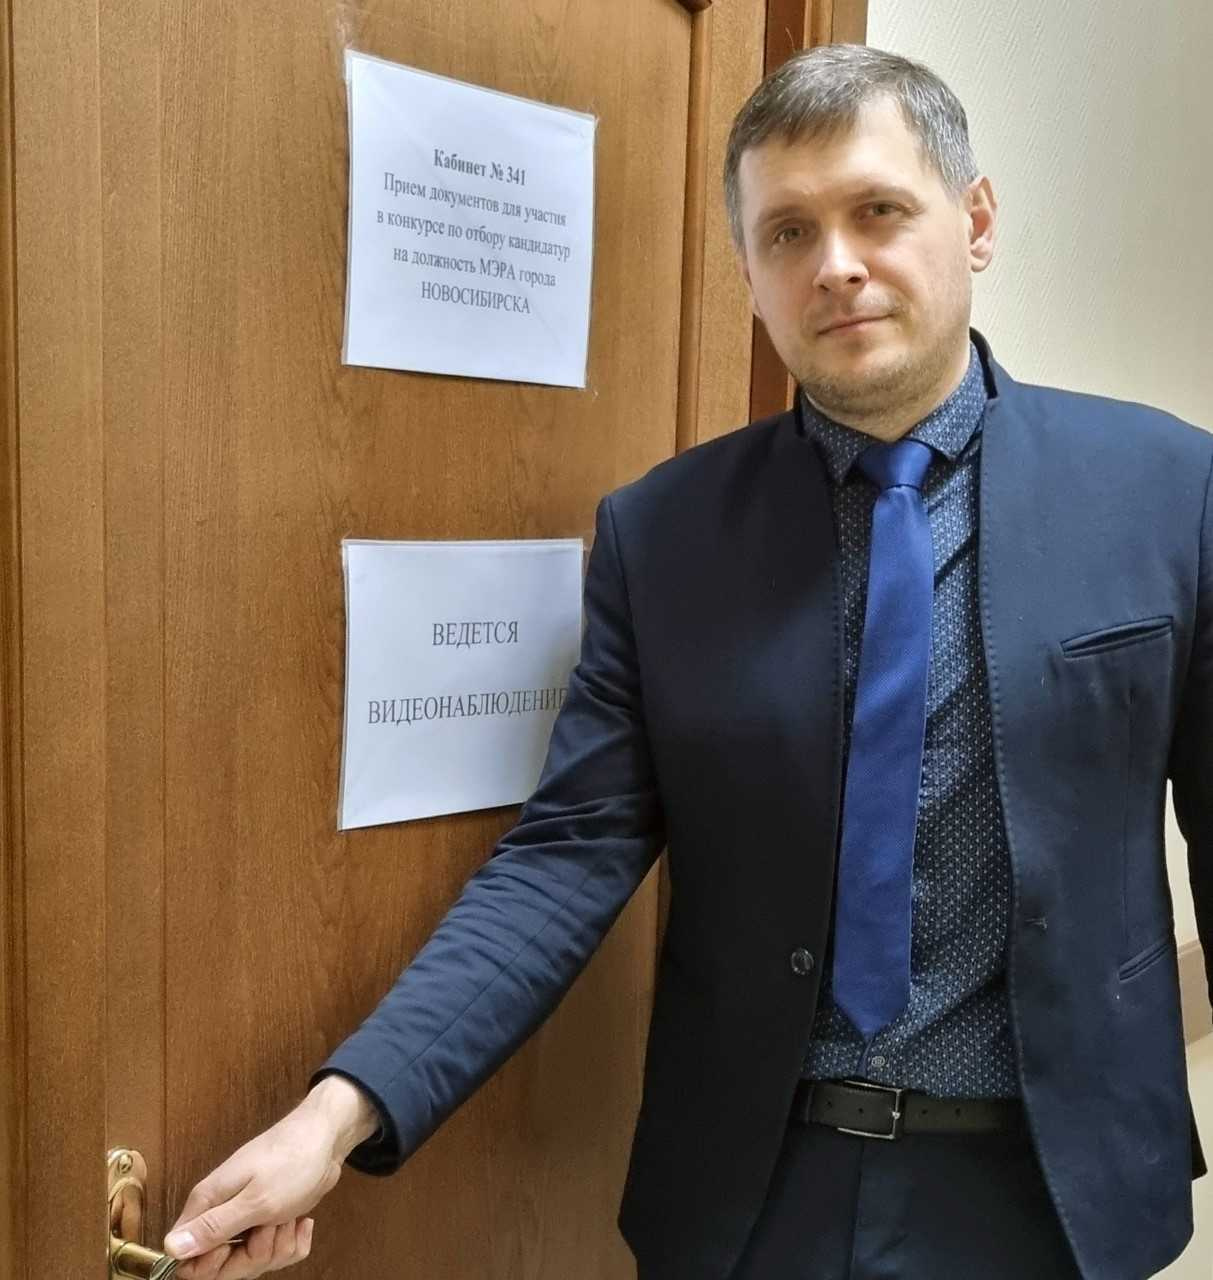 Картуков — директор управляющей компании в Кемеровской области